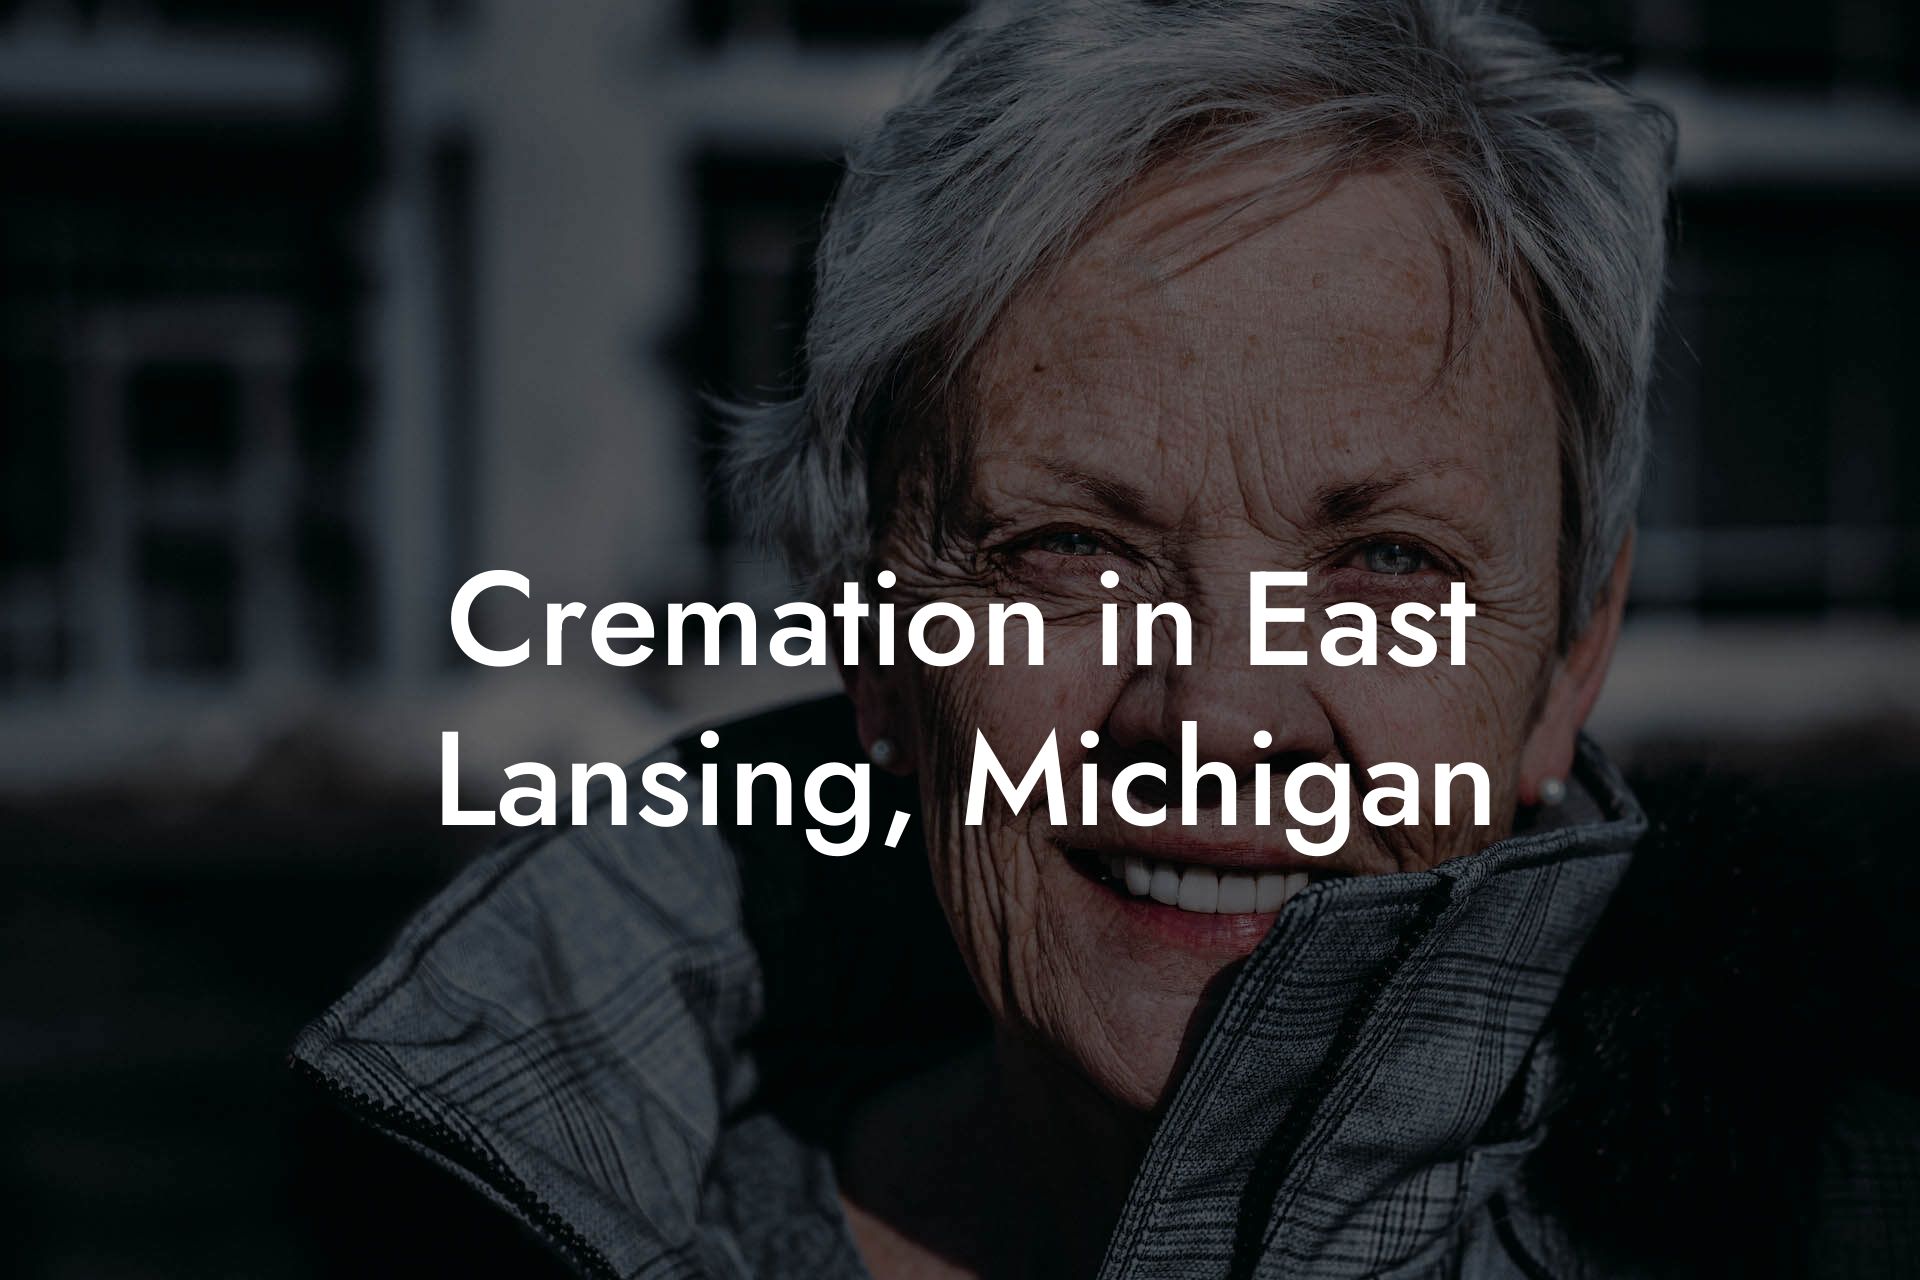 Cremation in East Lansing, Michigan